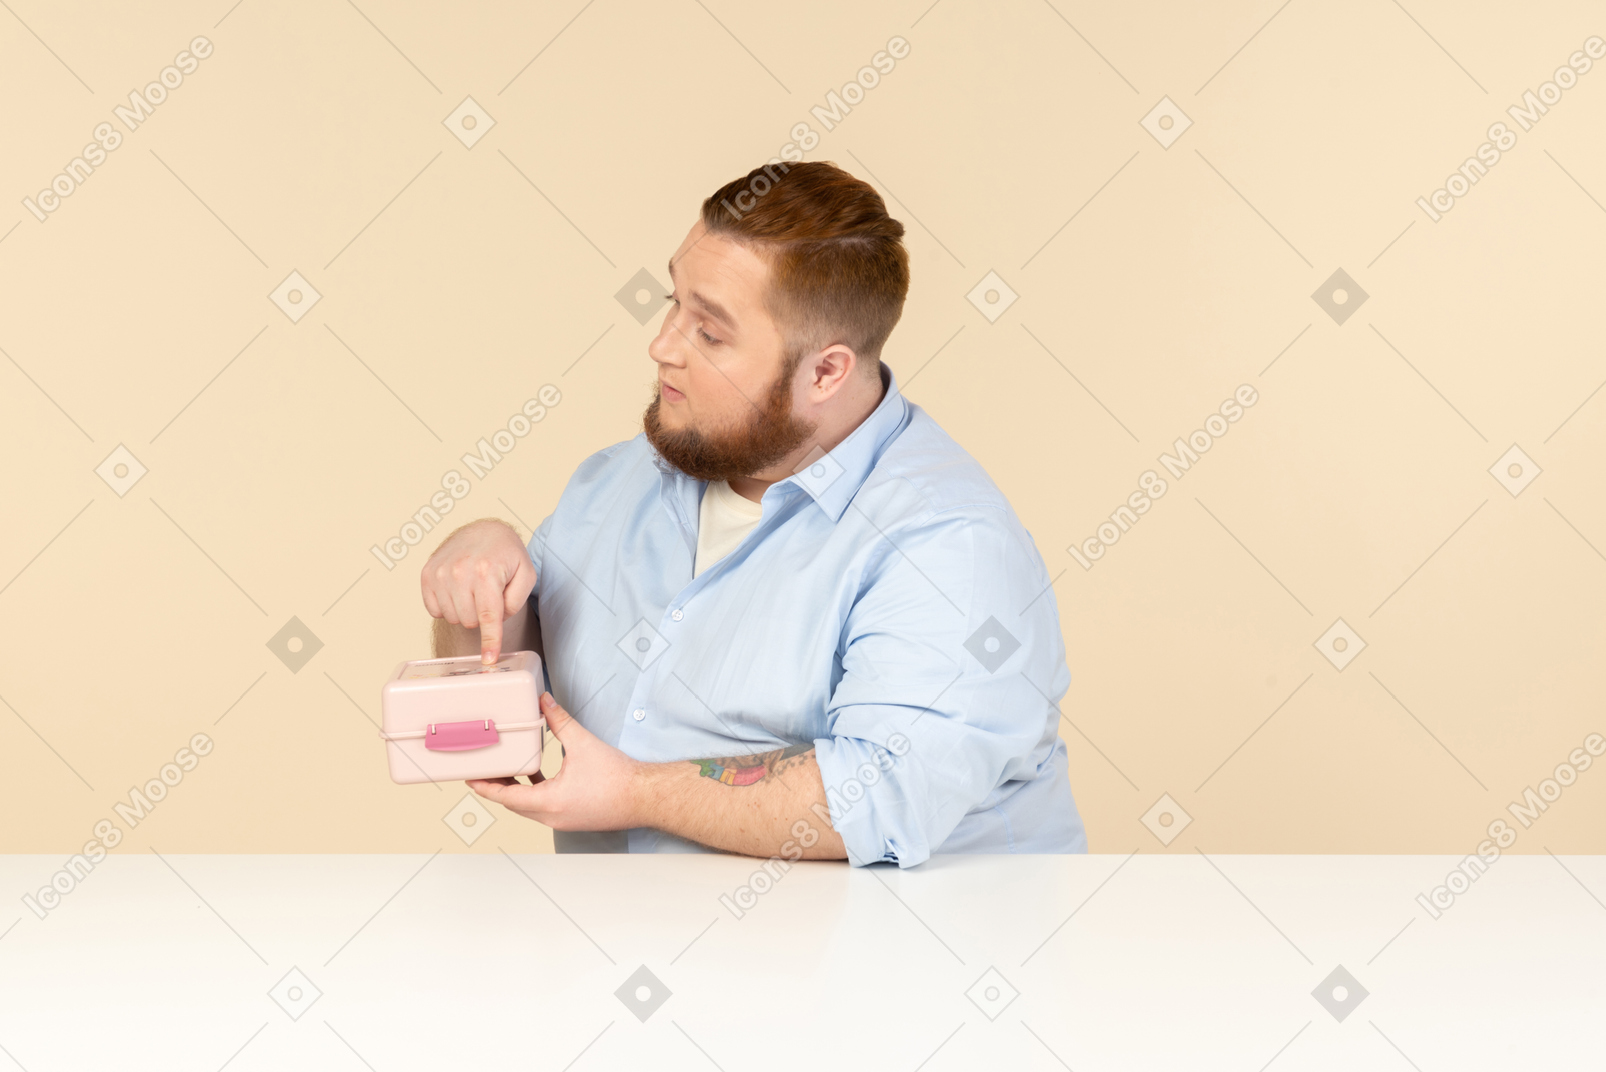 Großer mann am tisch sitzen und lunchbox halten